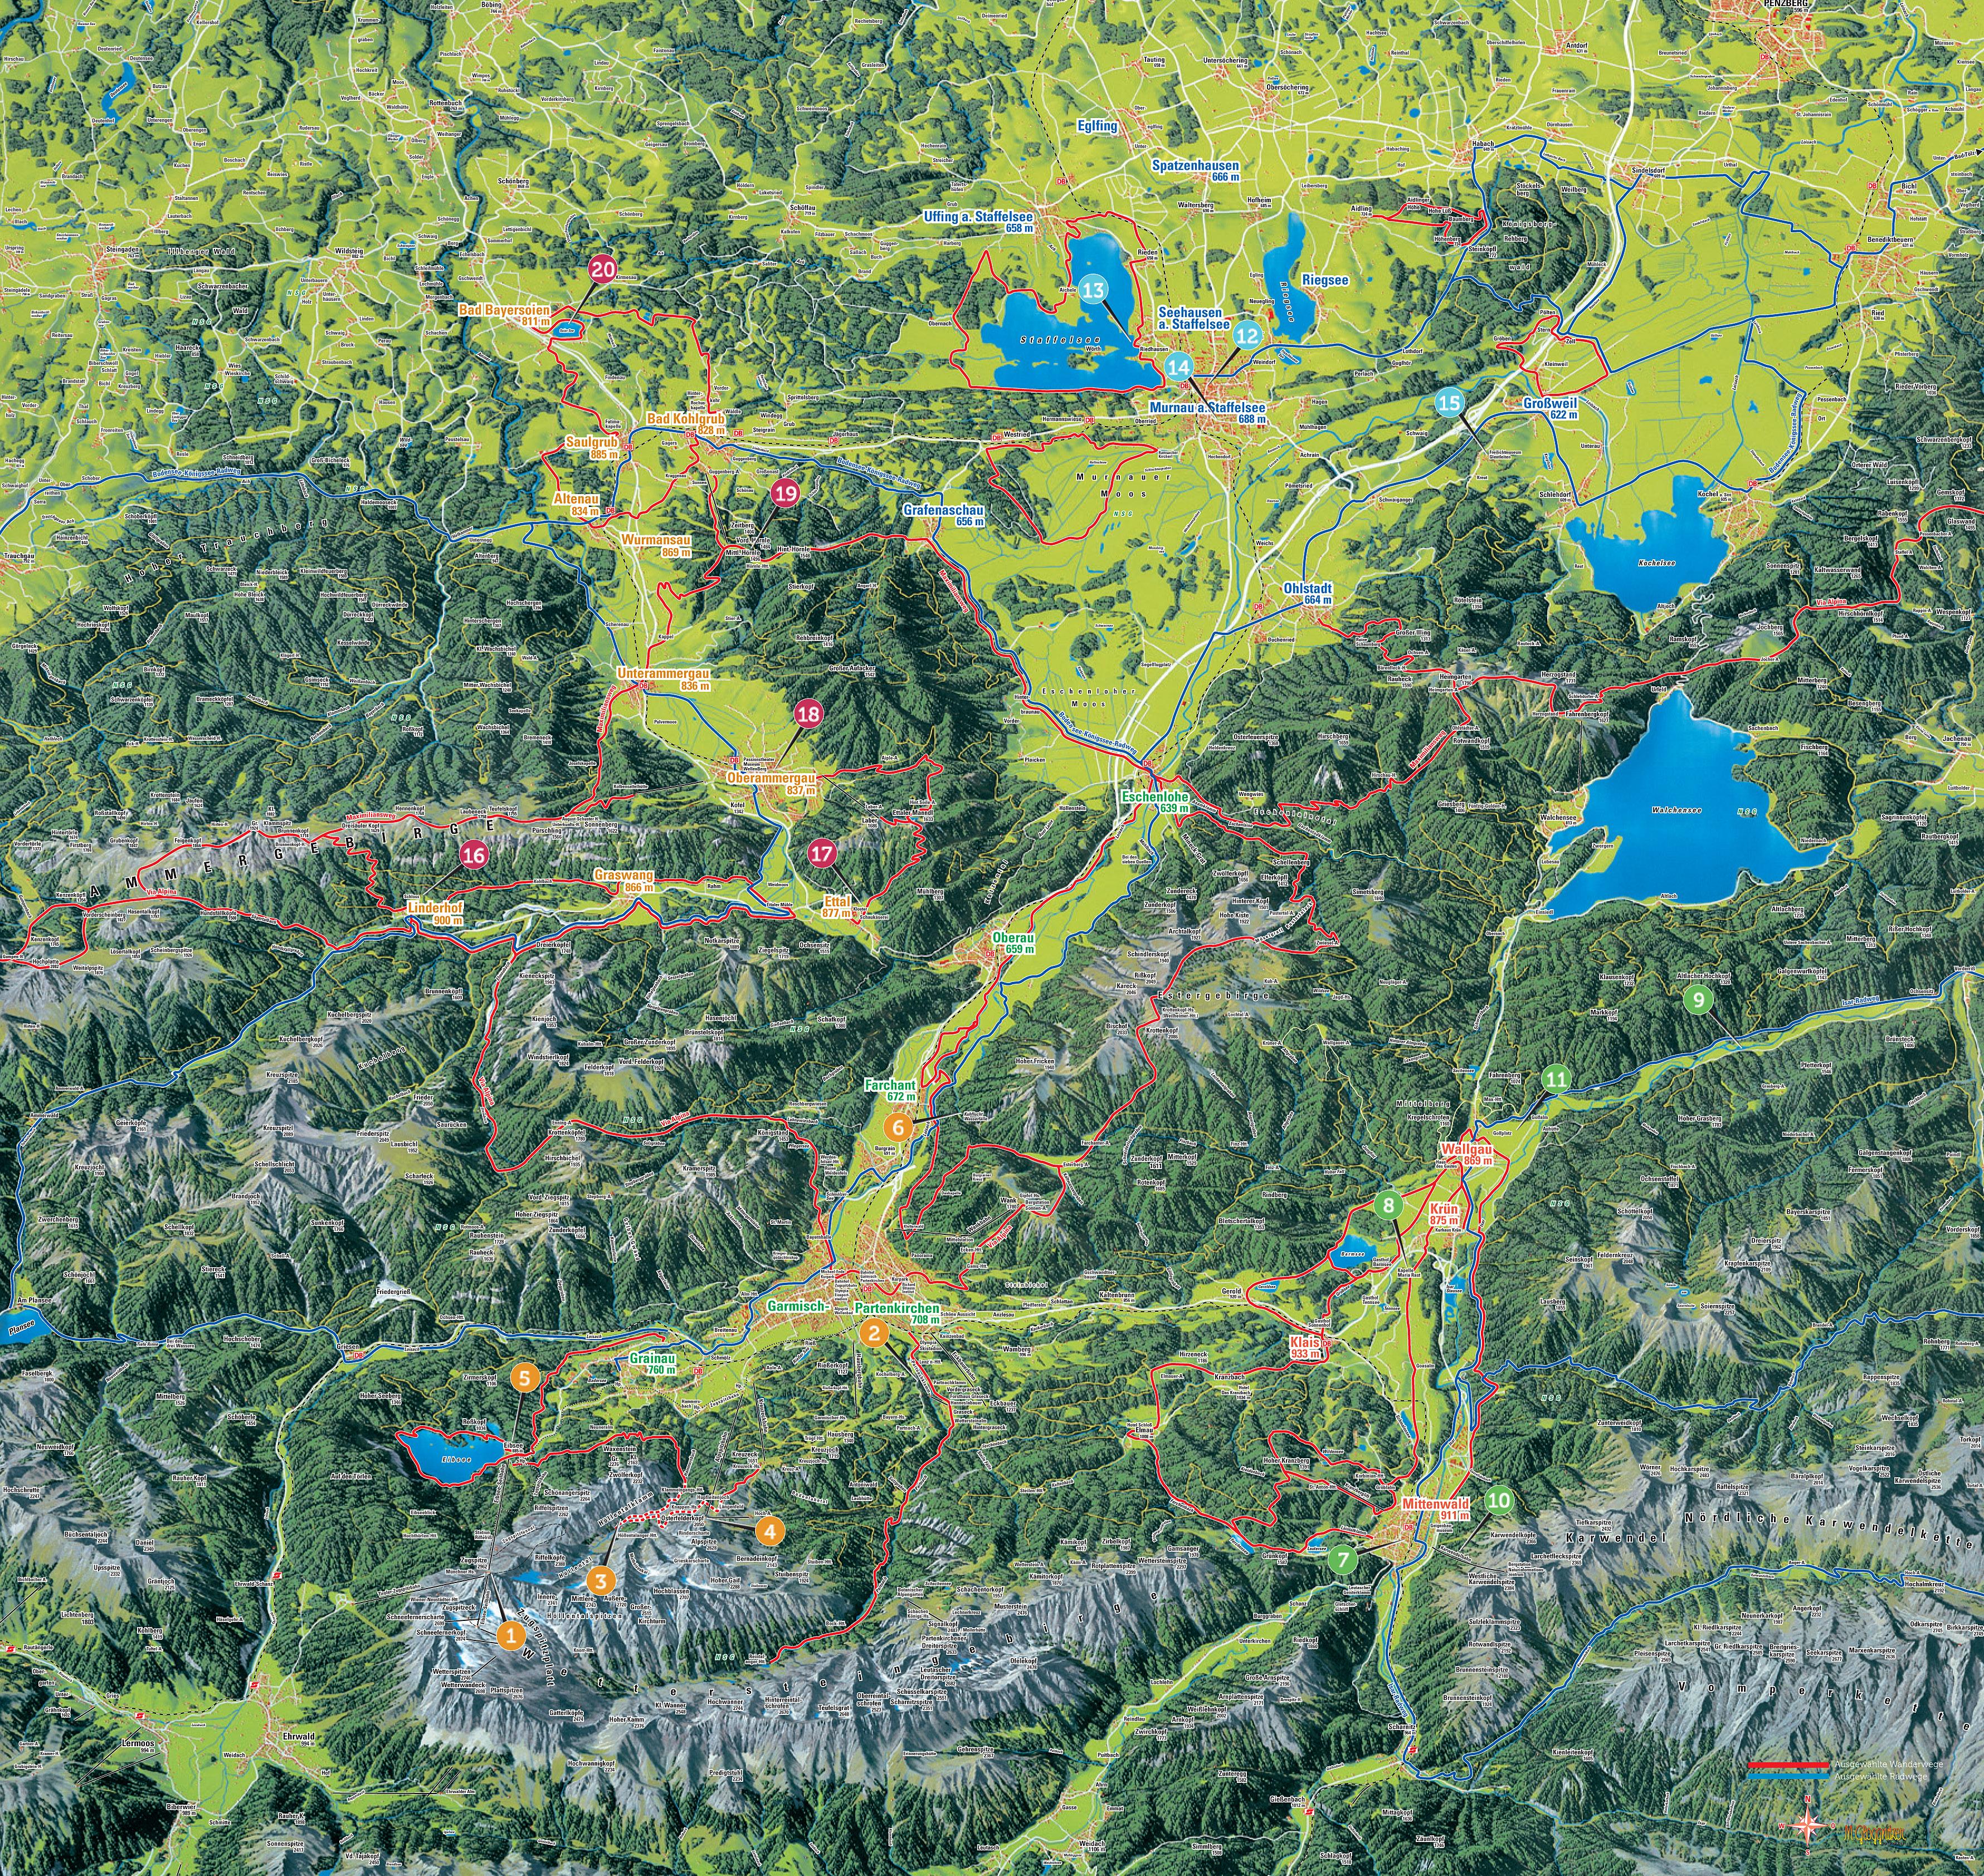 Panoramakarte der Zugspitz Region